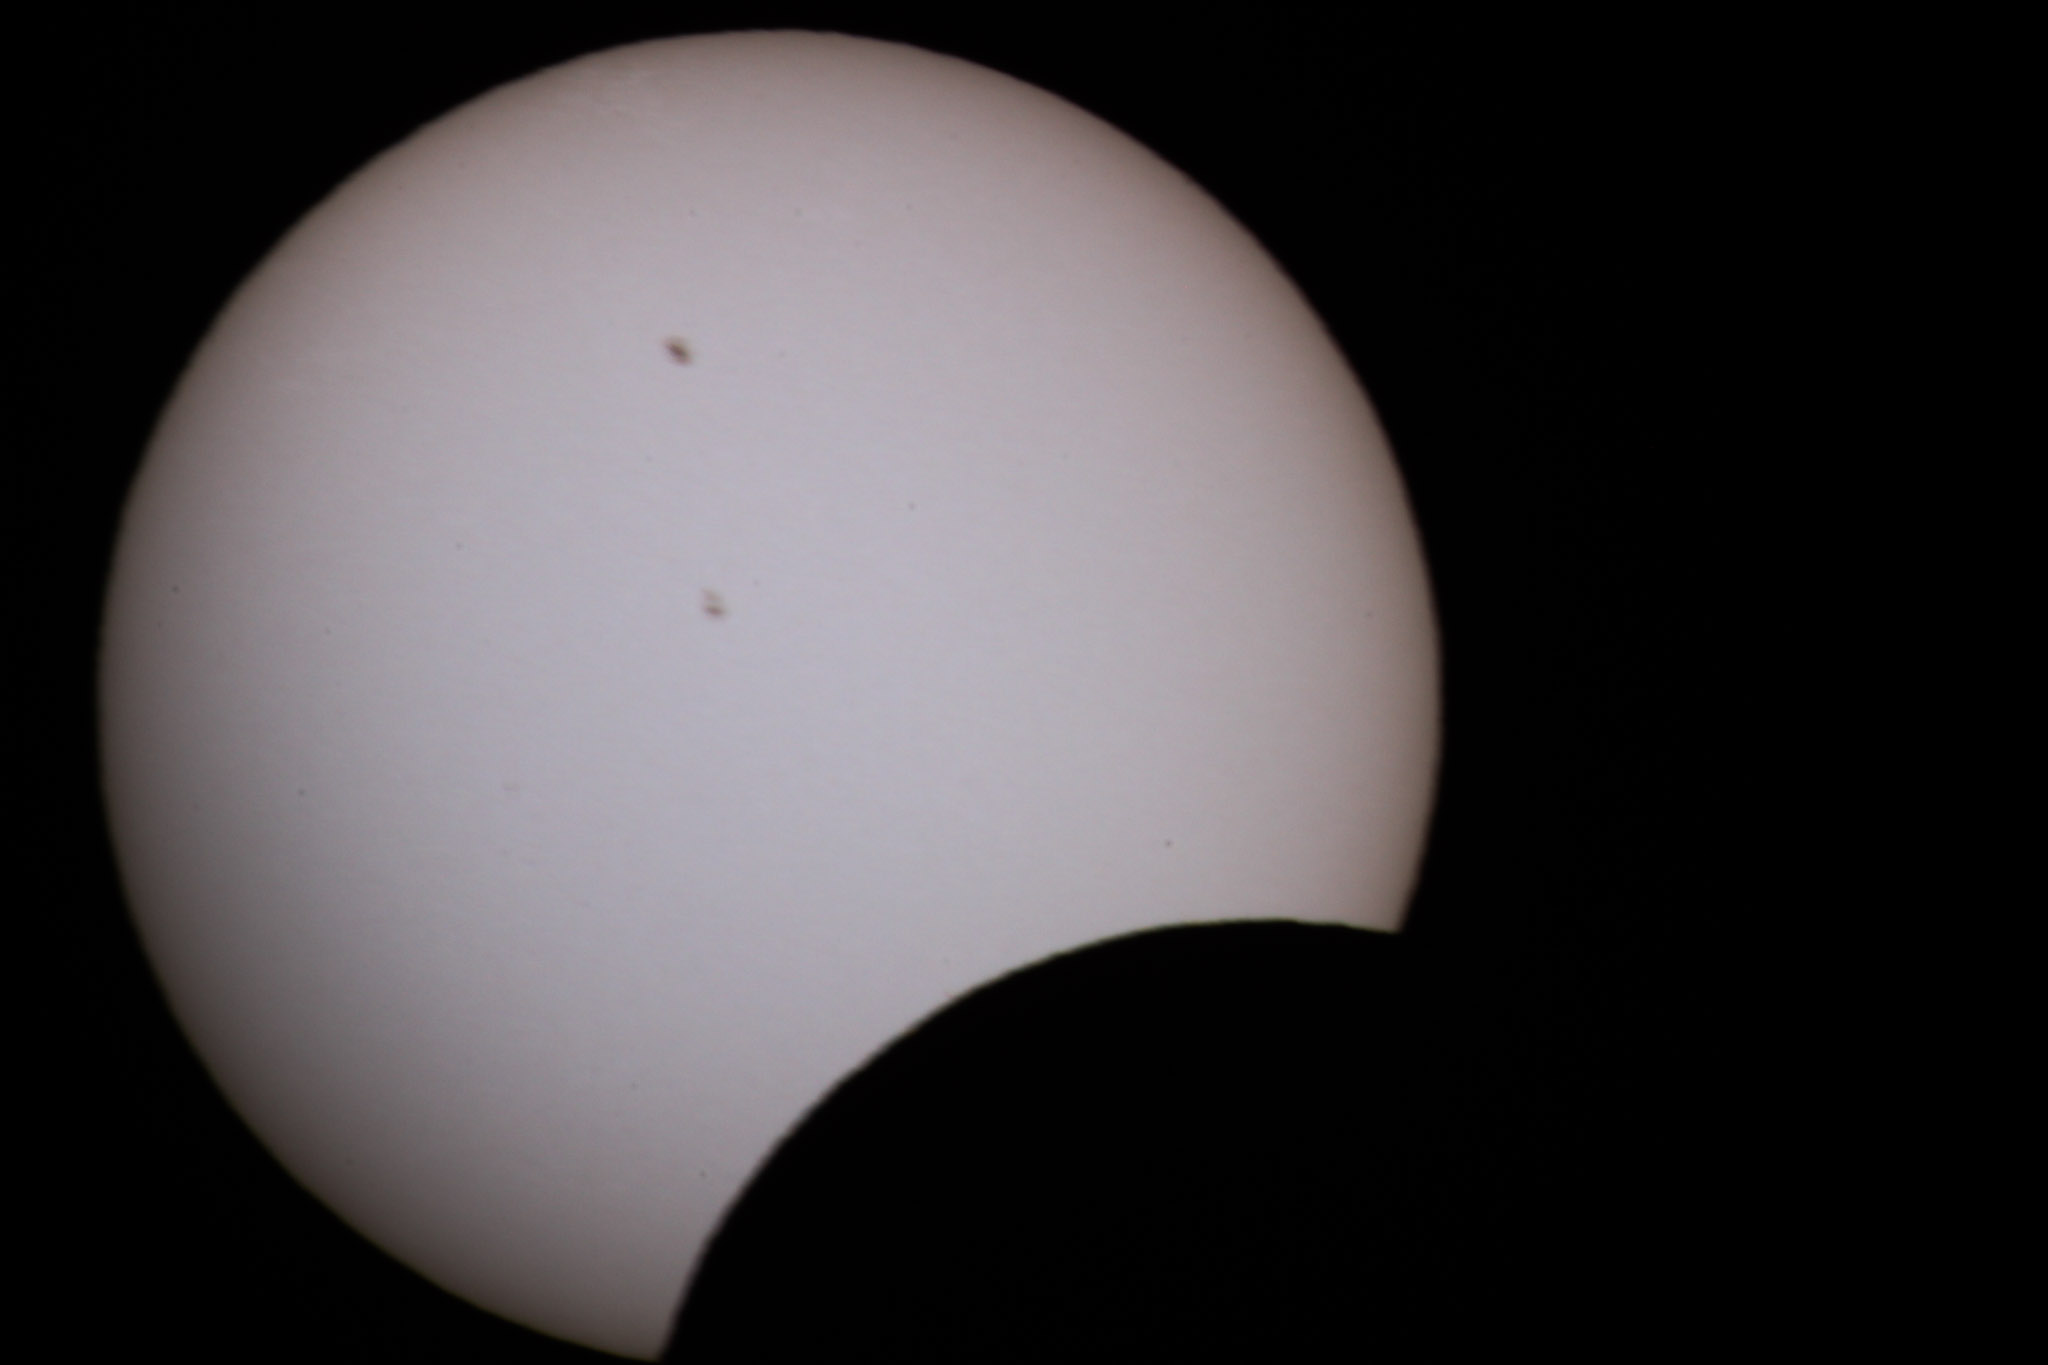 Eclipse solar teve um olhar especial em Serra Talhada neste sábado